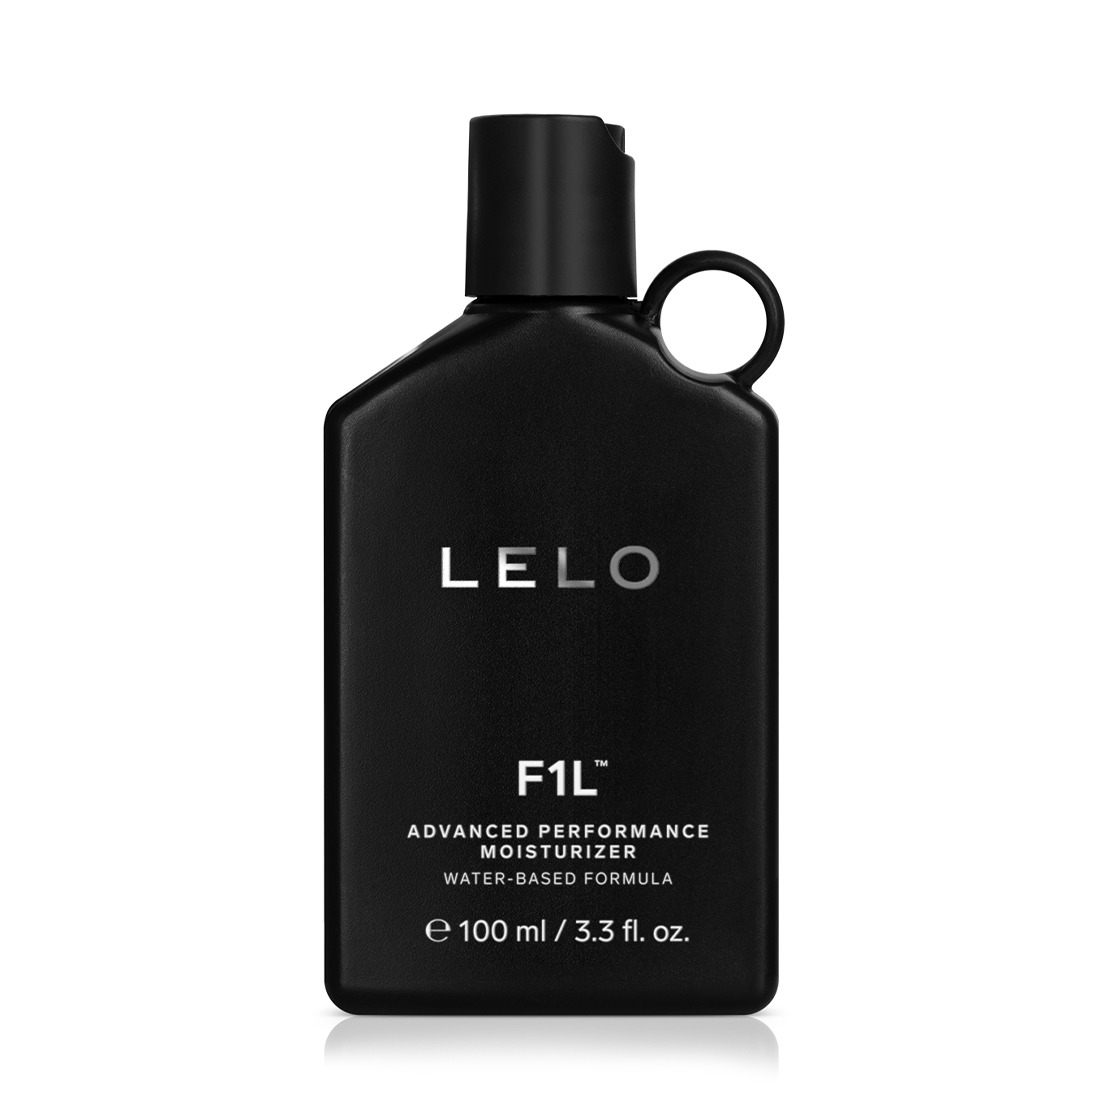 LELO F1L™ aksamitny żel nawilżający na bazie wody